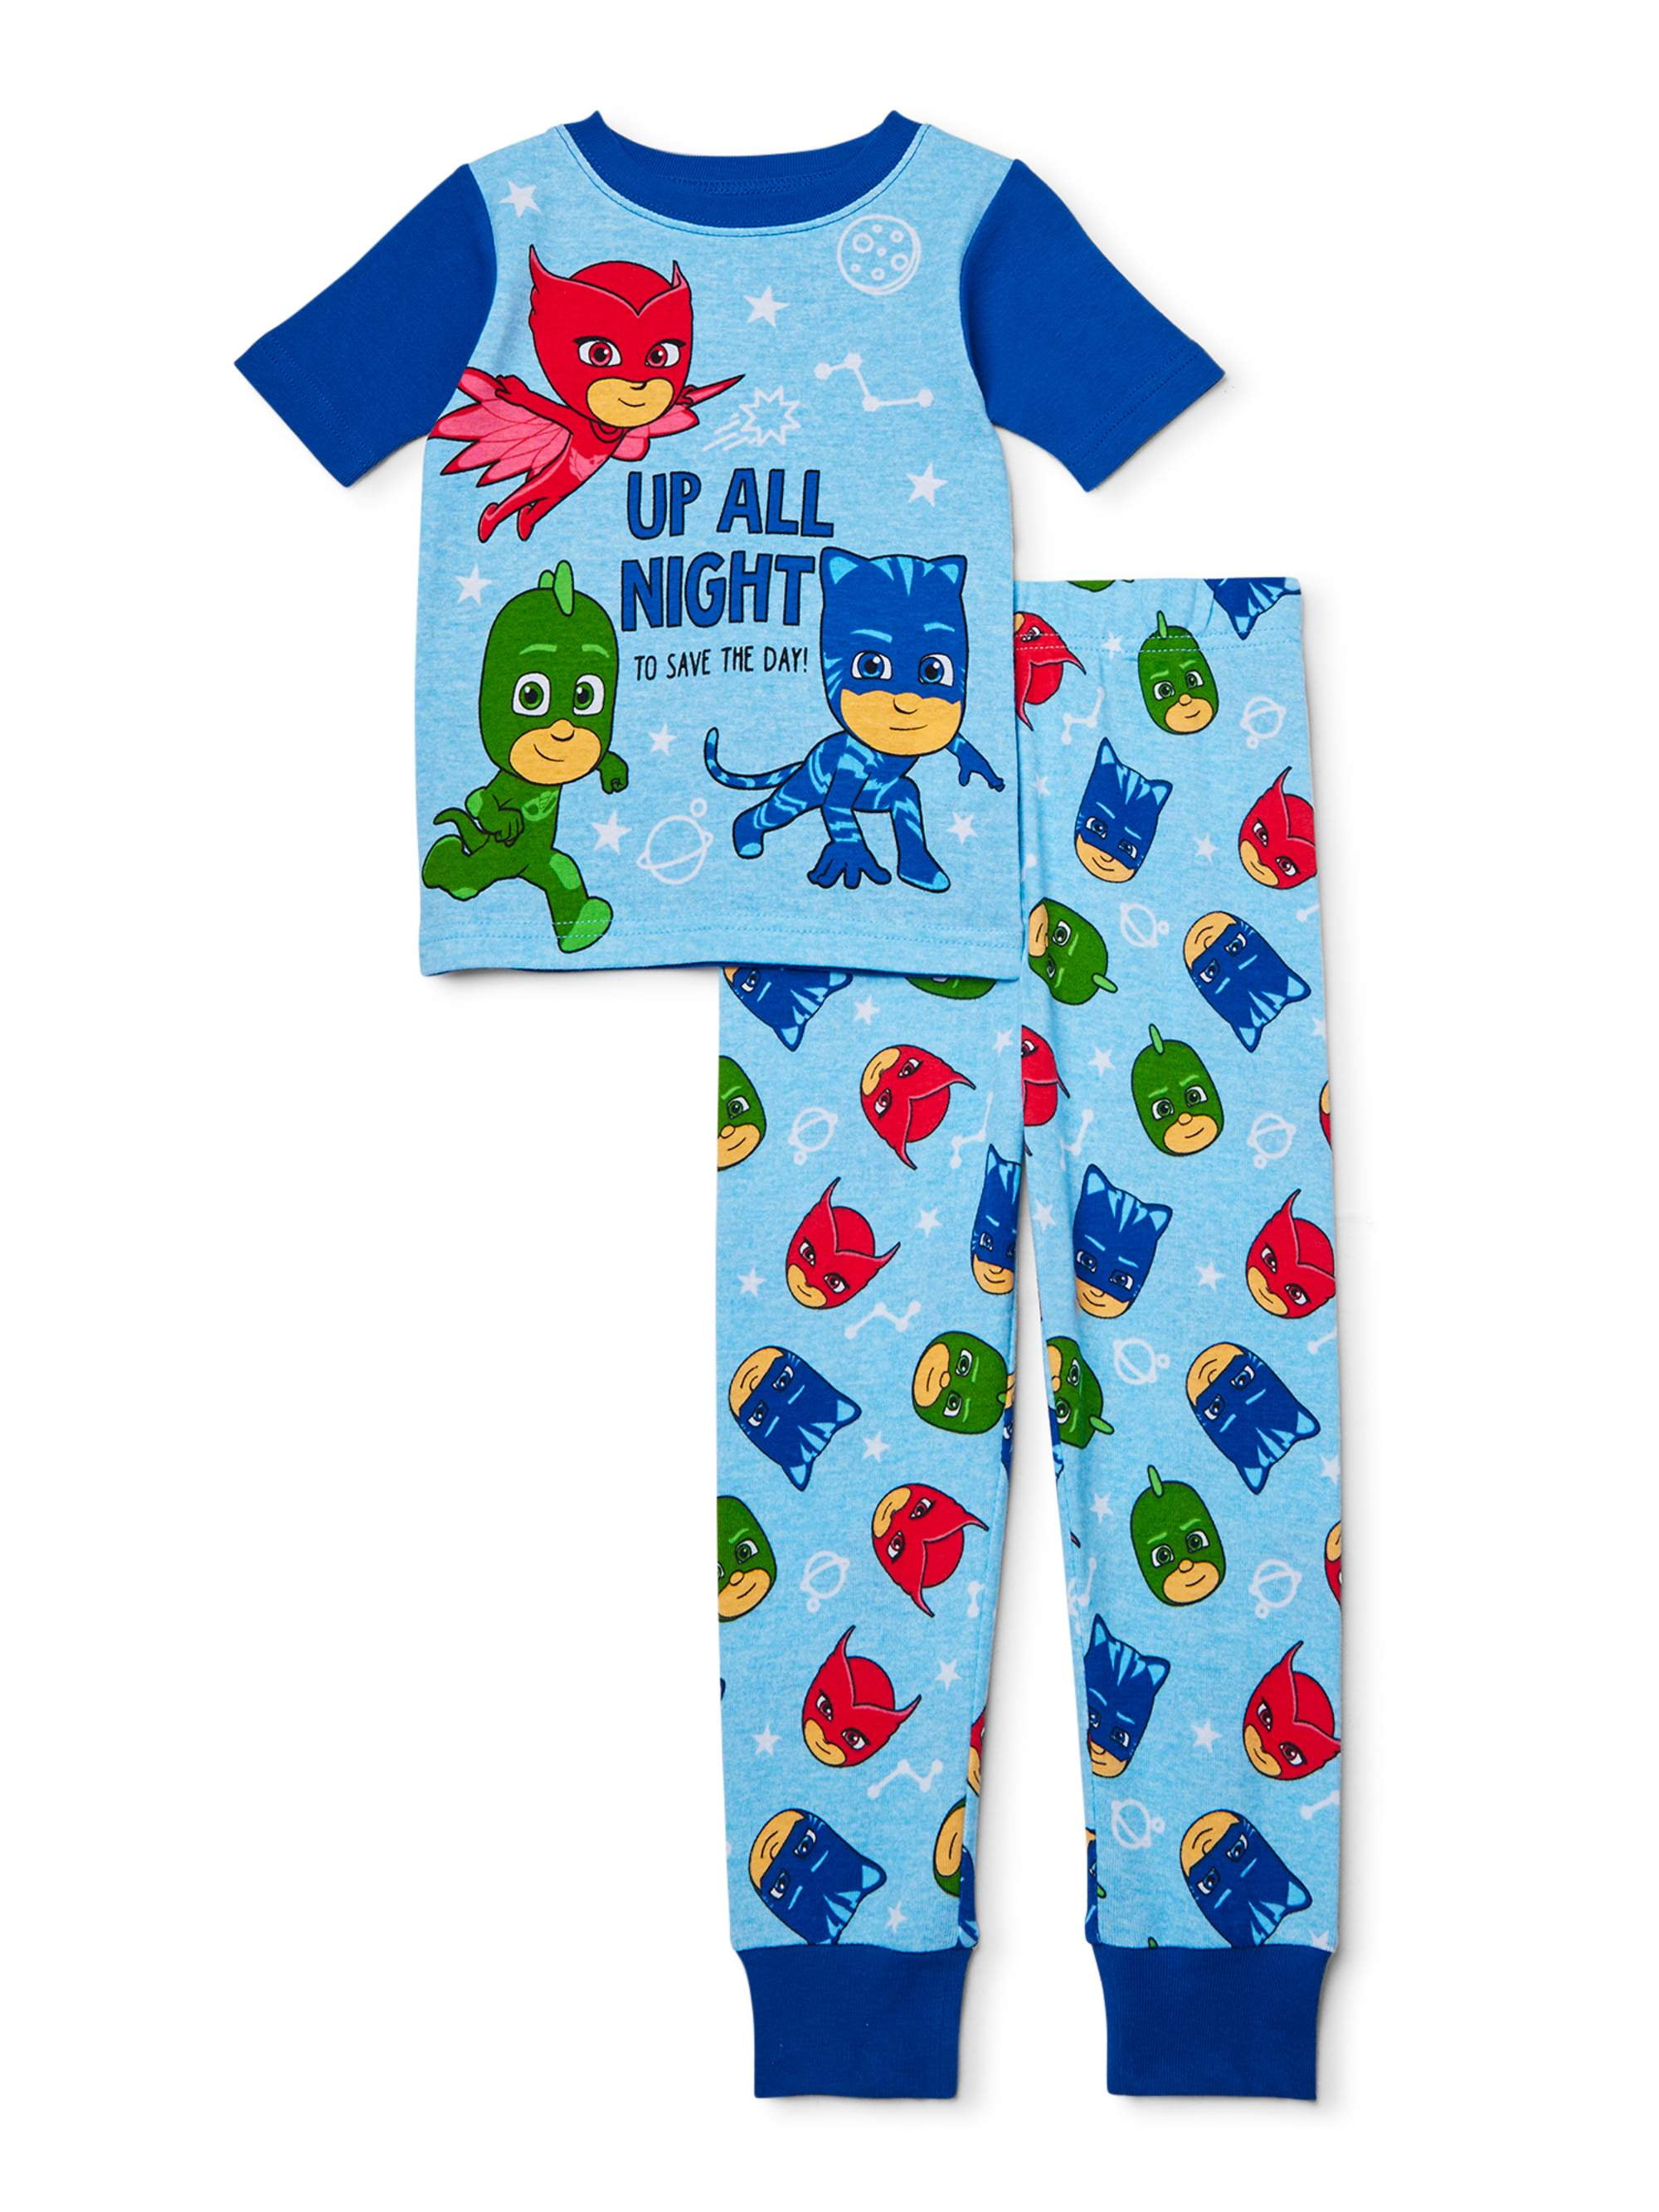 Boys PJ Masks Pyjamas Shortie Pyjama Set 18months 5Years Various Designs